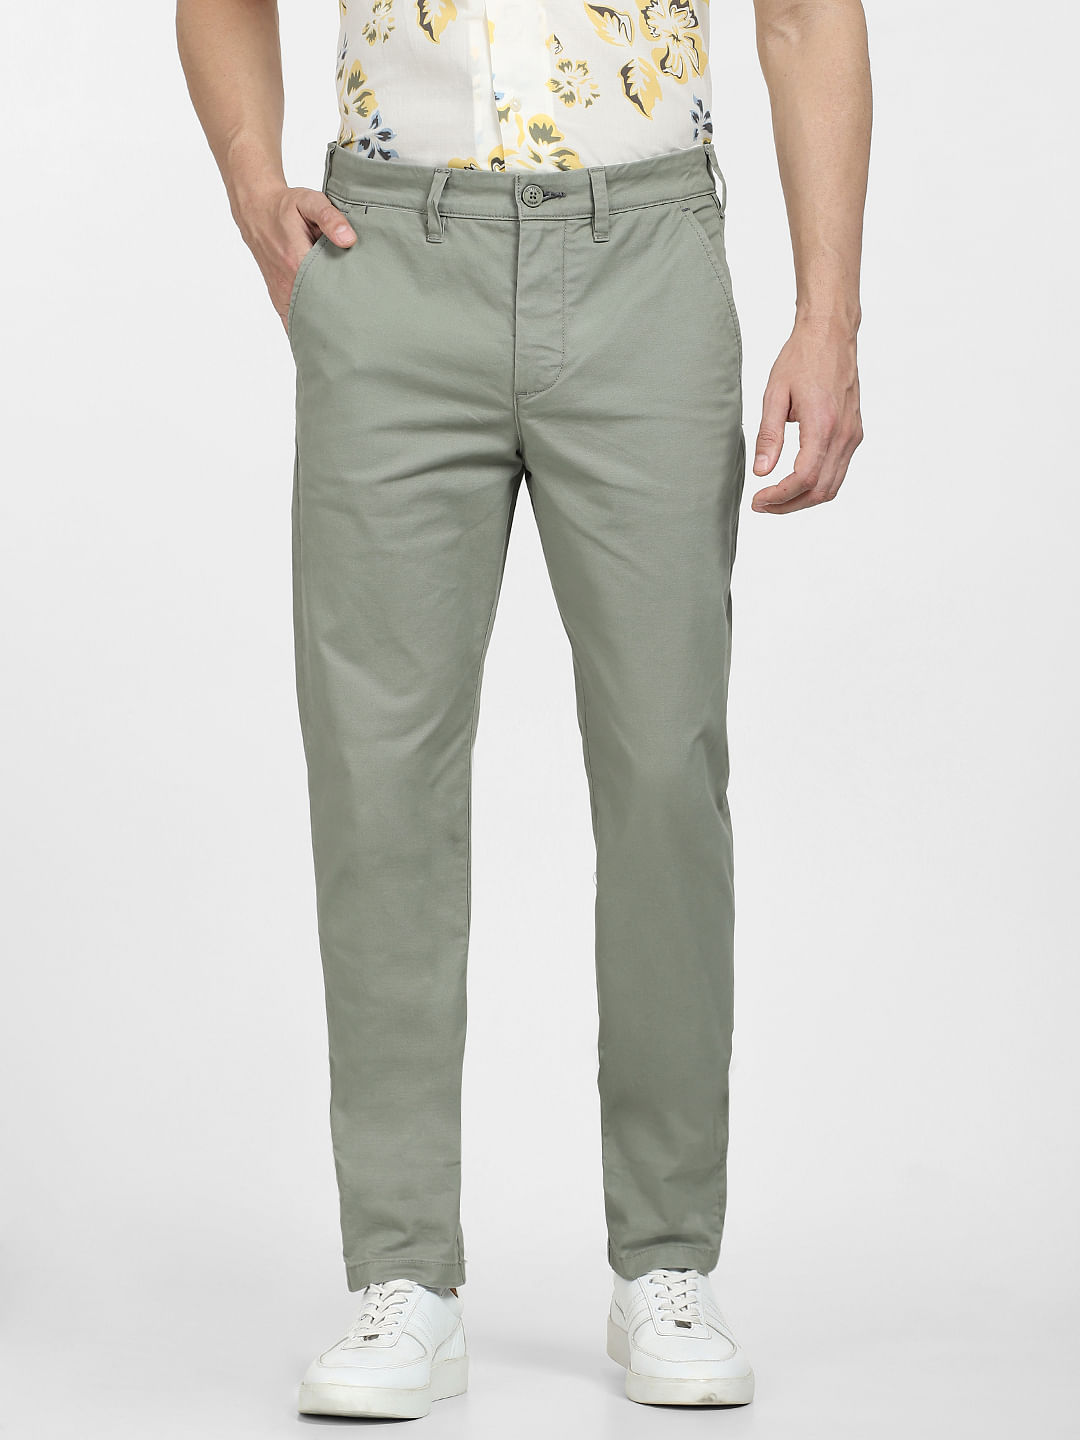 Buy Easy Linen Pista Green Trouser | Beyours